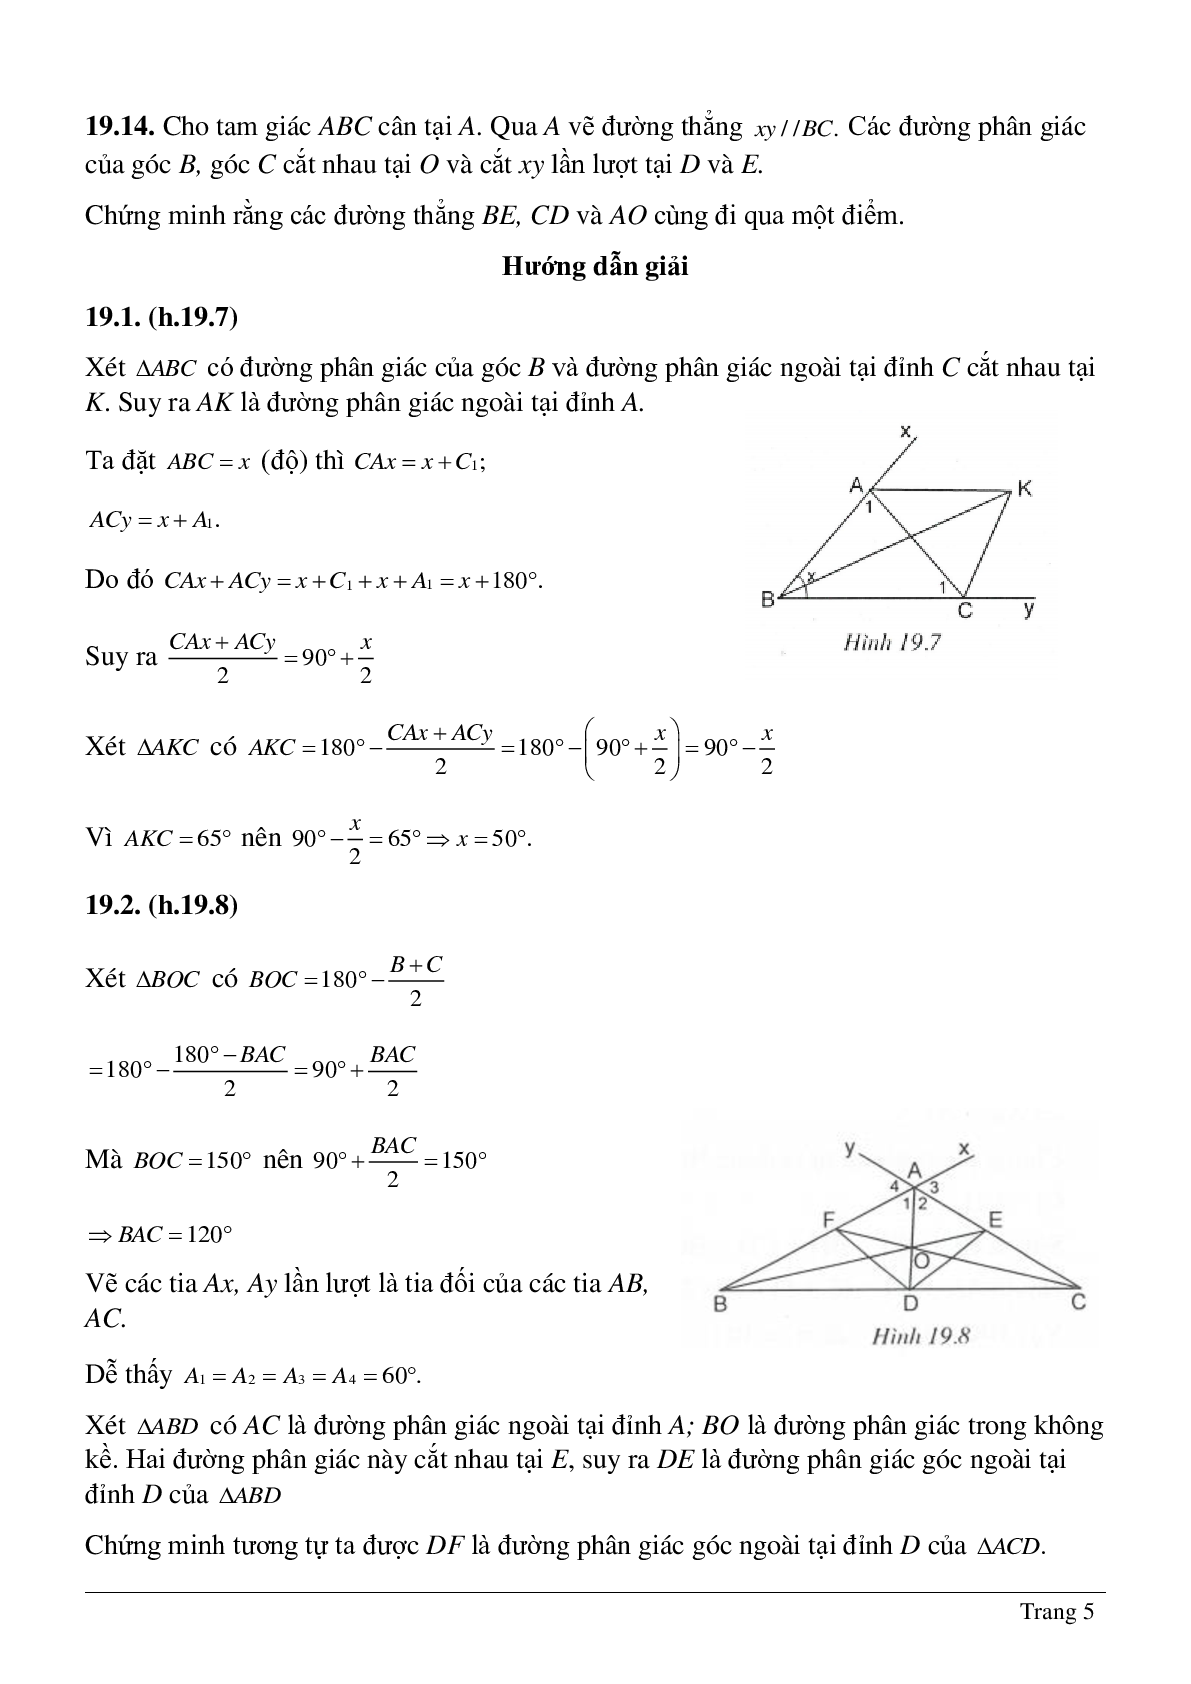 Phương pháp giải và bài tập về Tính chất tia phân giác của một góc - Tính chất ba đường phân giác của tam giác có lời giải (trang 5)